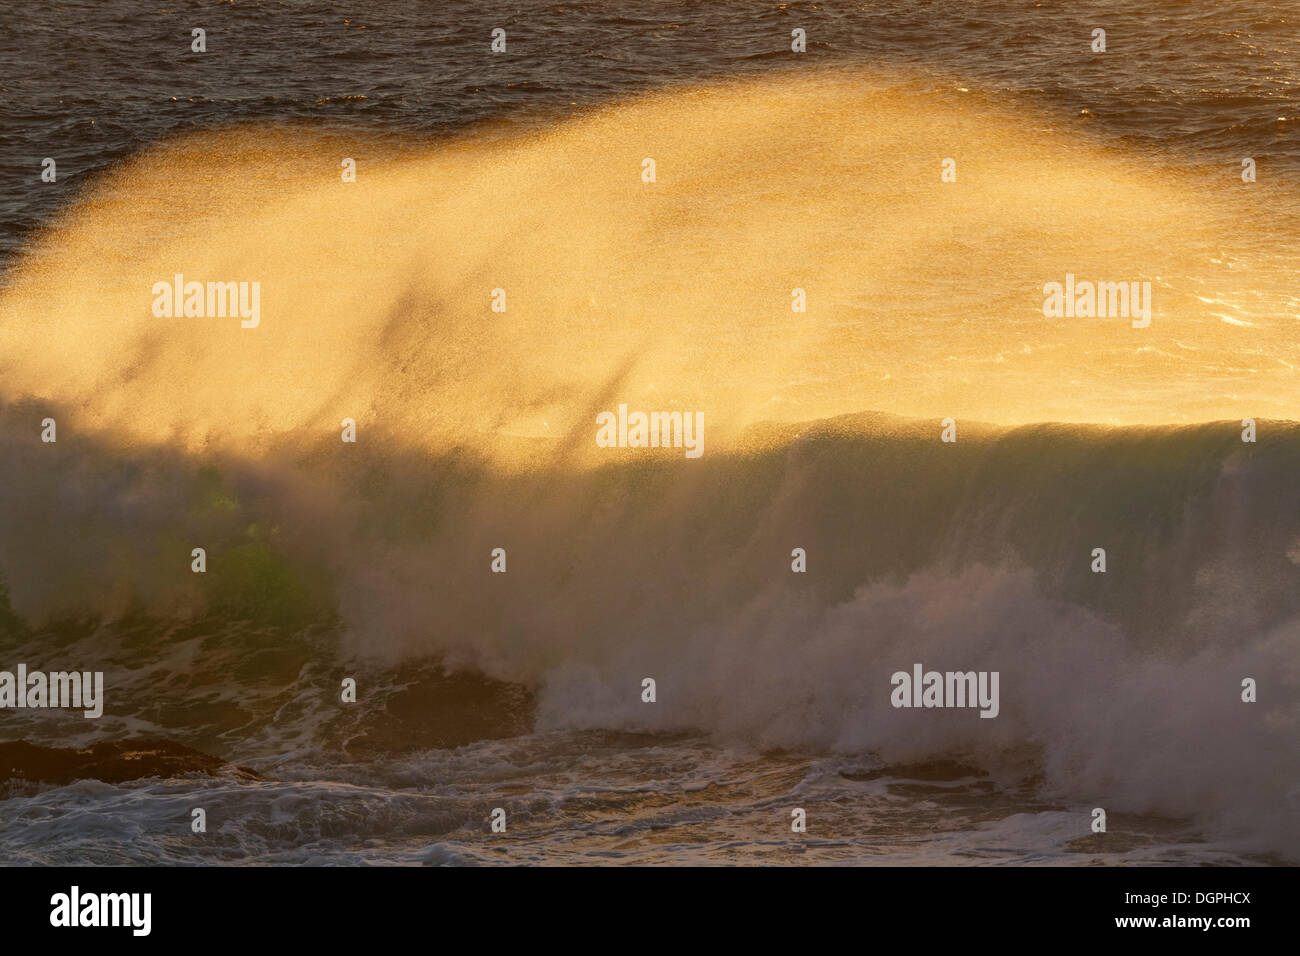 Les vagues dans la lumière du soir, La Puntilla, Valle Gran Rey, La Gomera, Canary Islands, Spain Banque D'Images